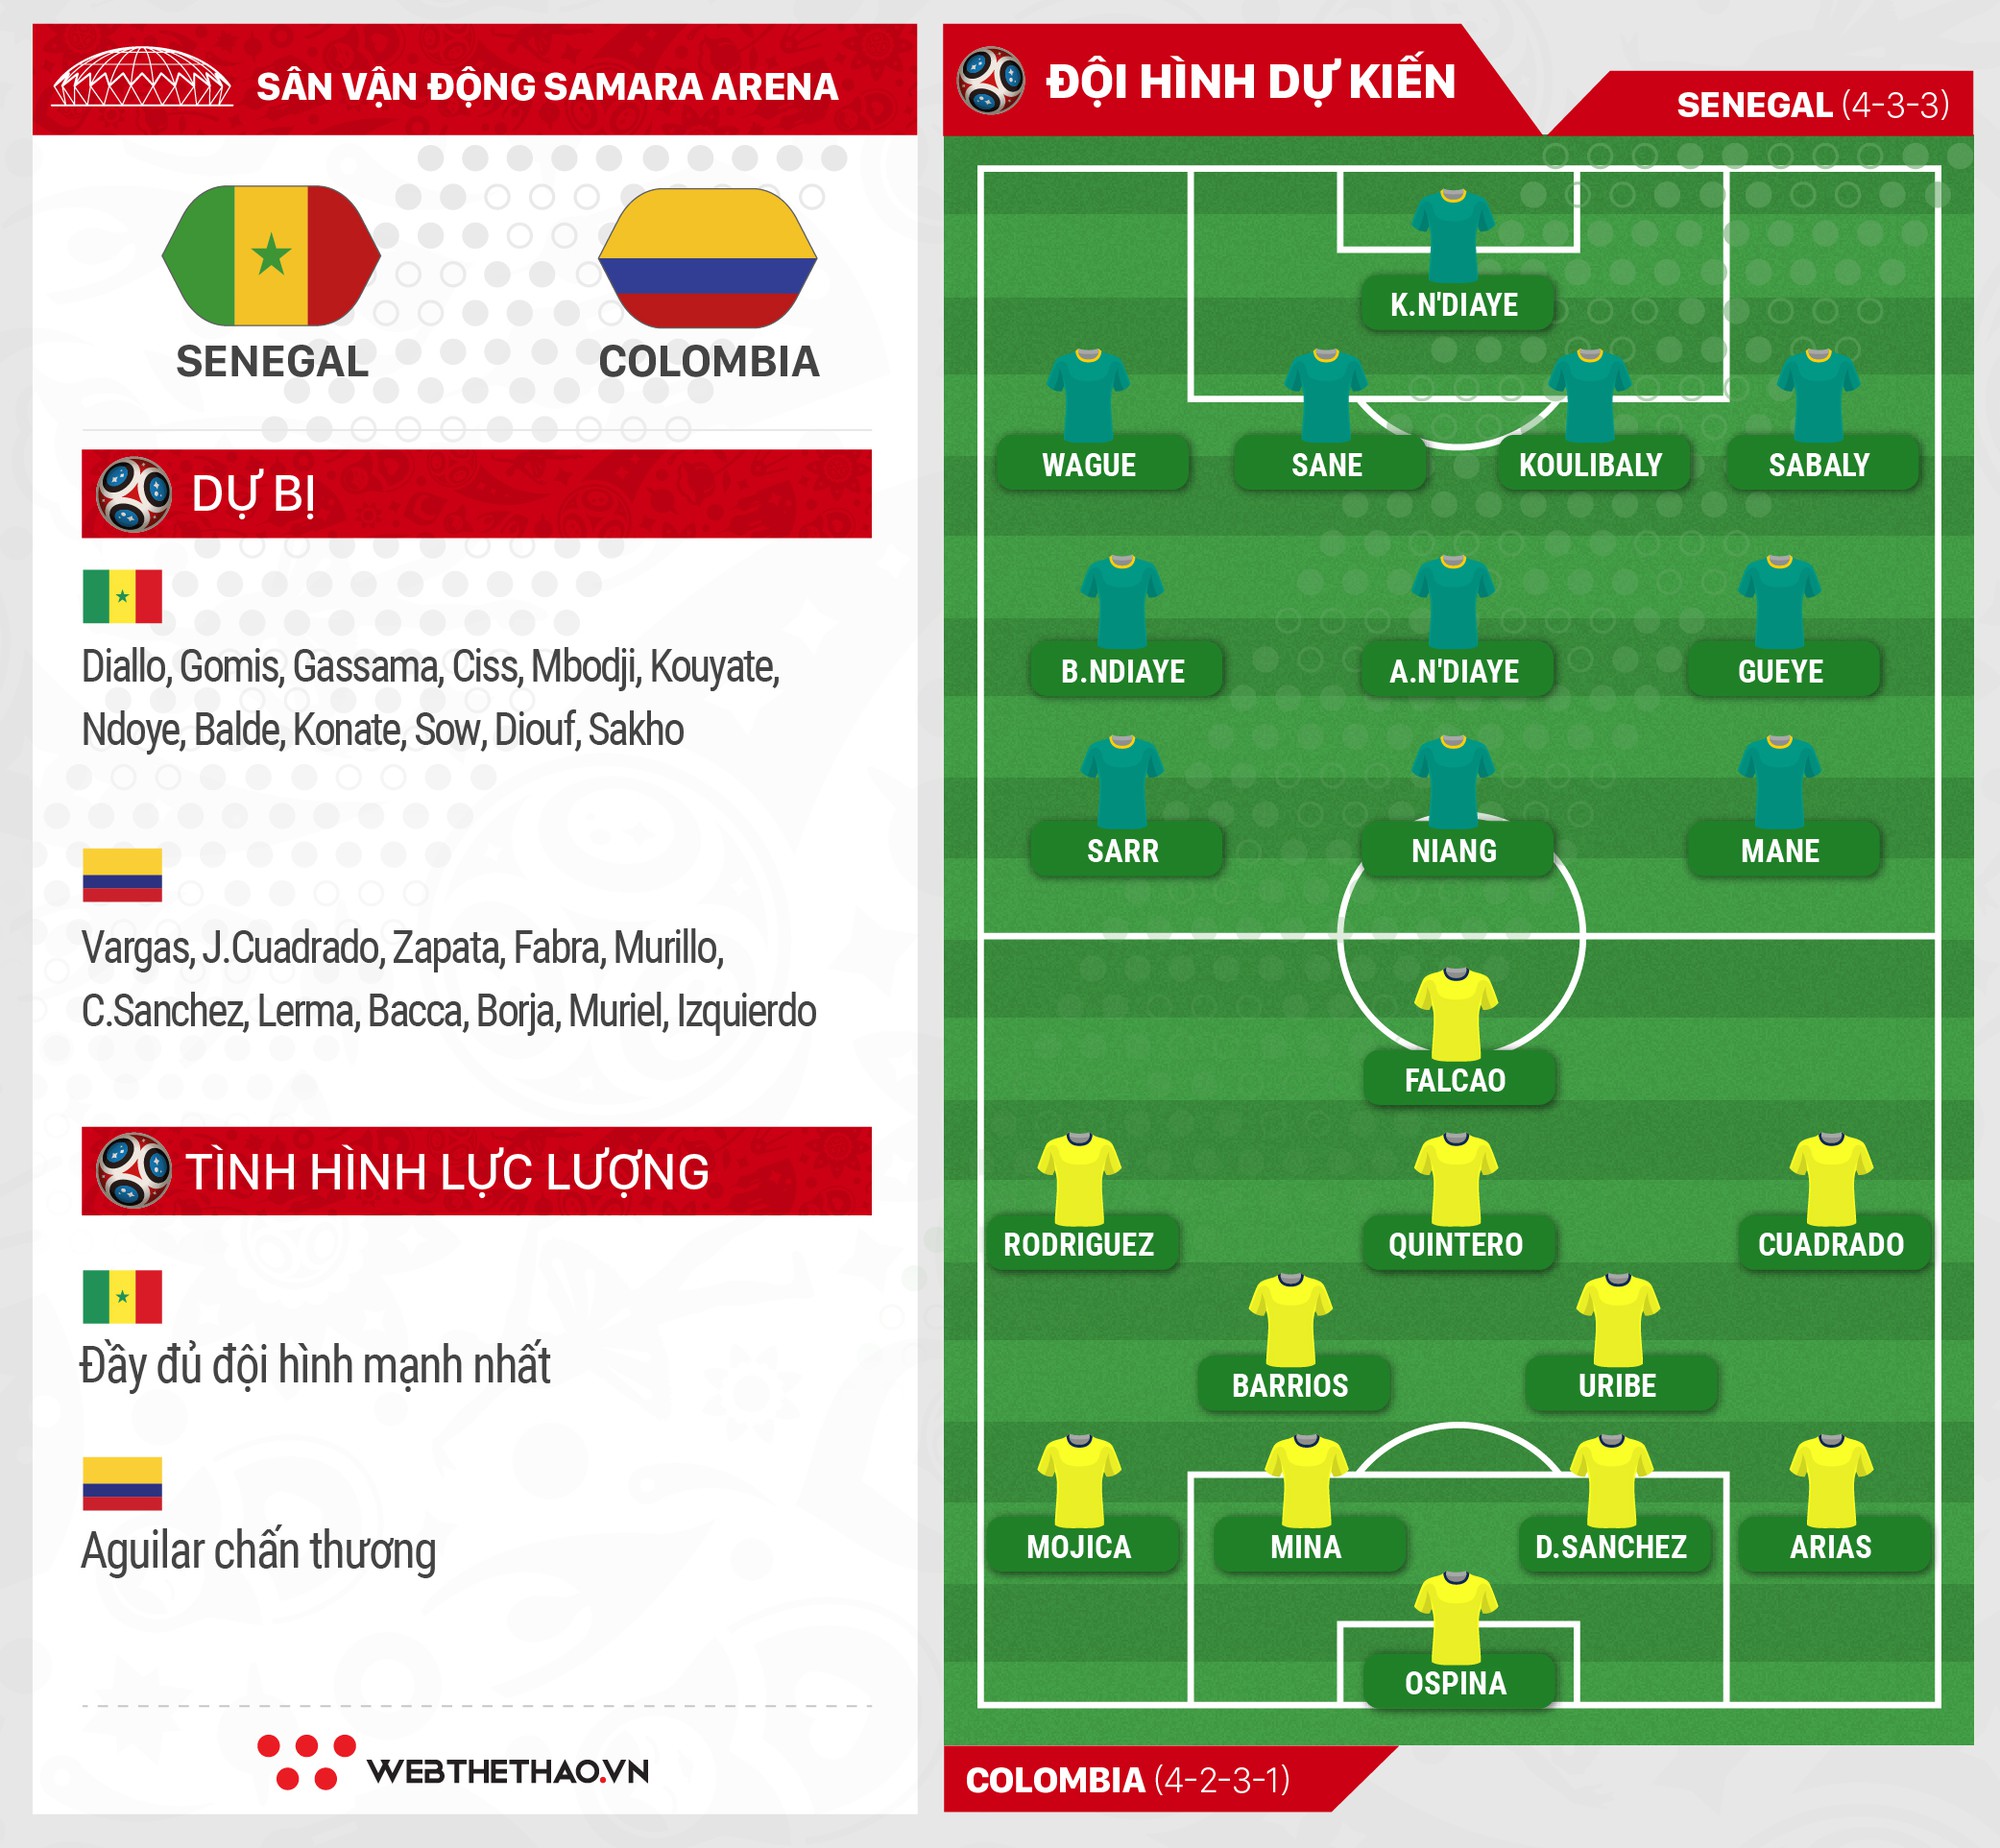 Chuyên gia gánh team Rodriguez -  Mane sẽ quyết định vận mệnh của Senegal và Colombia? - Ảnh 5.